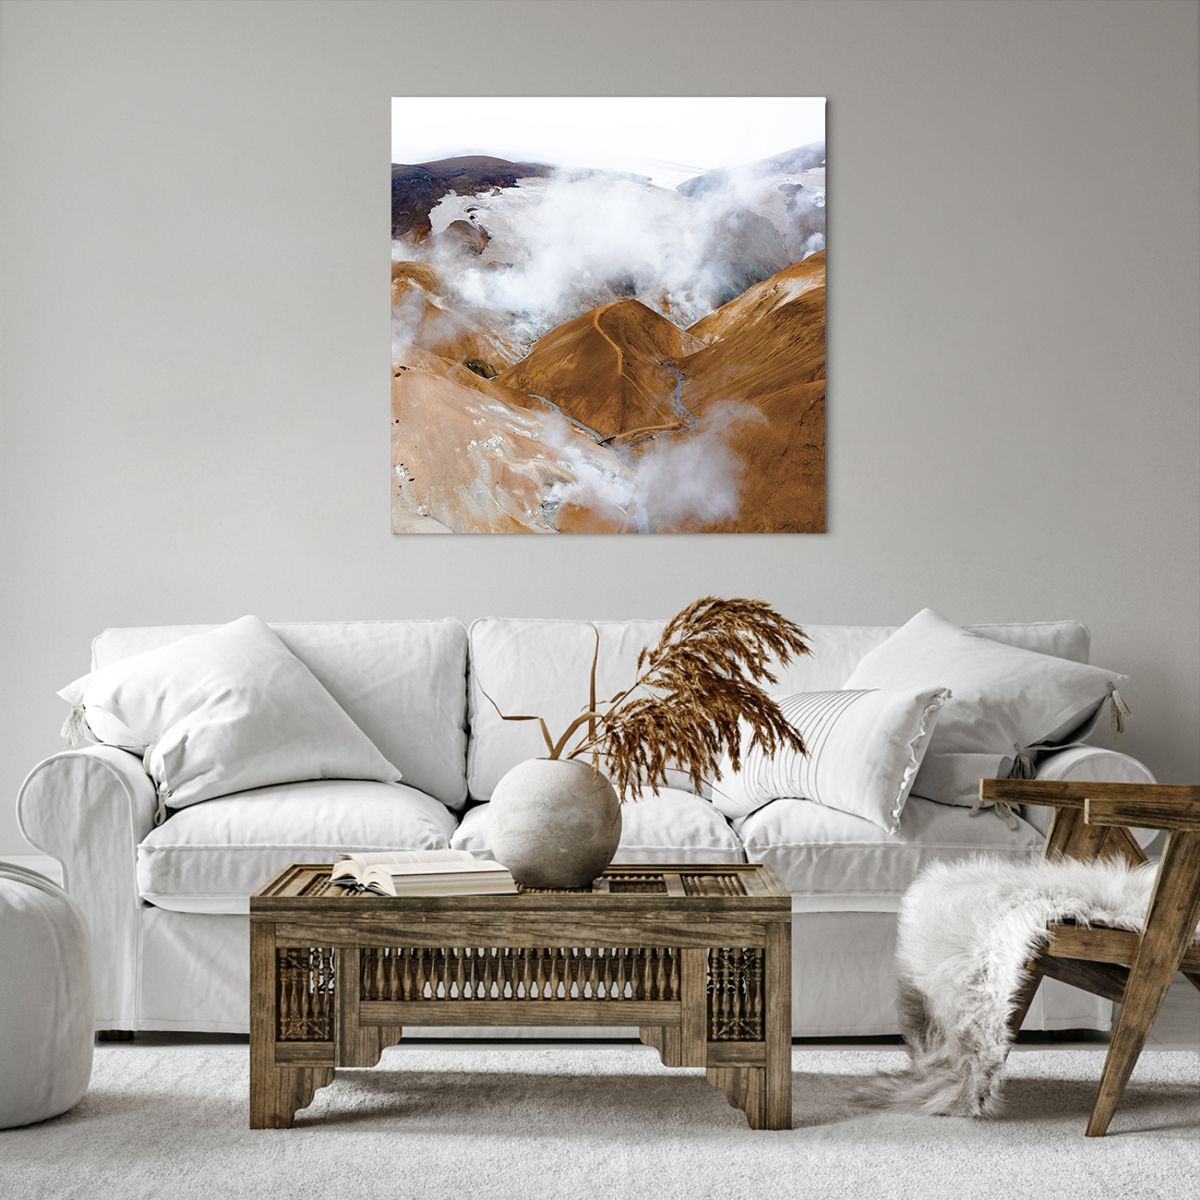 Bild auf Leinwand Landschaft, Bild auf Leinwand Wasserfall, Bild auf Leinwand Island, Bild auf Leinwand Vulkan, Bild auf Leinwand Natur